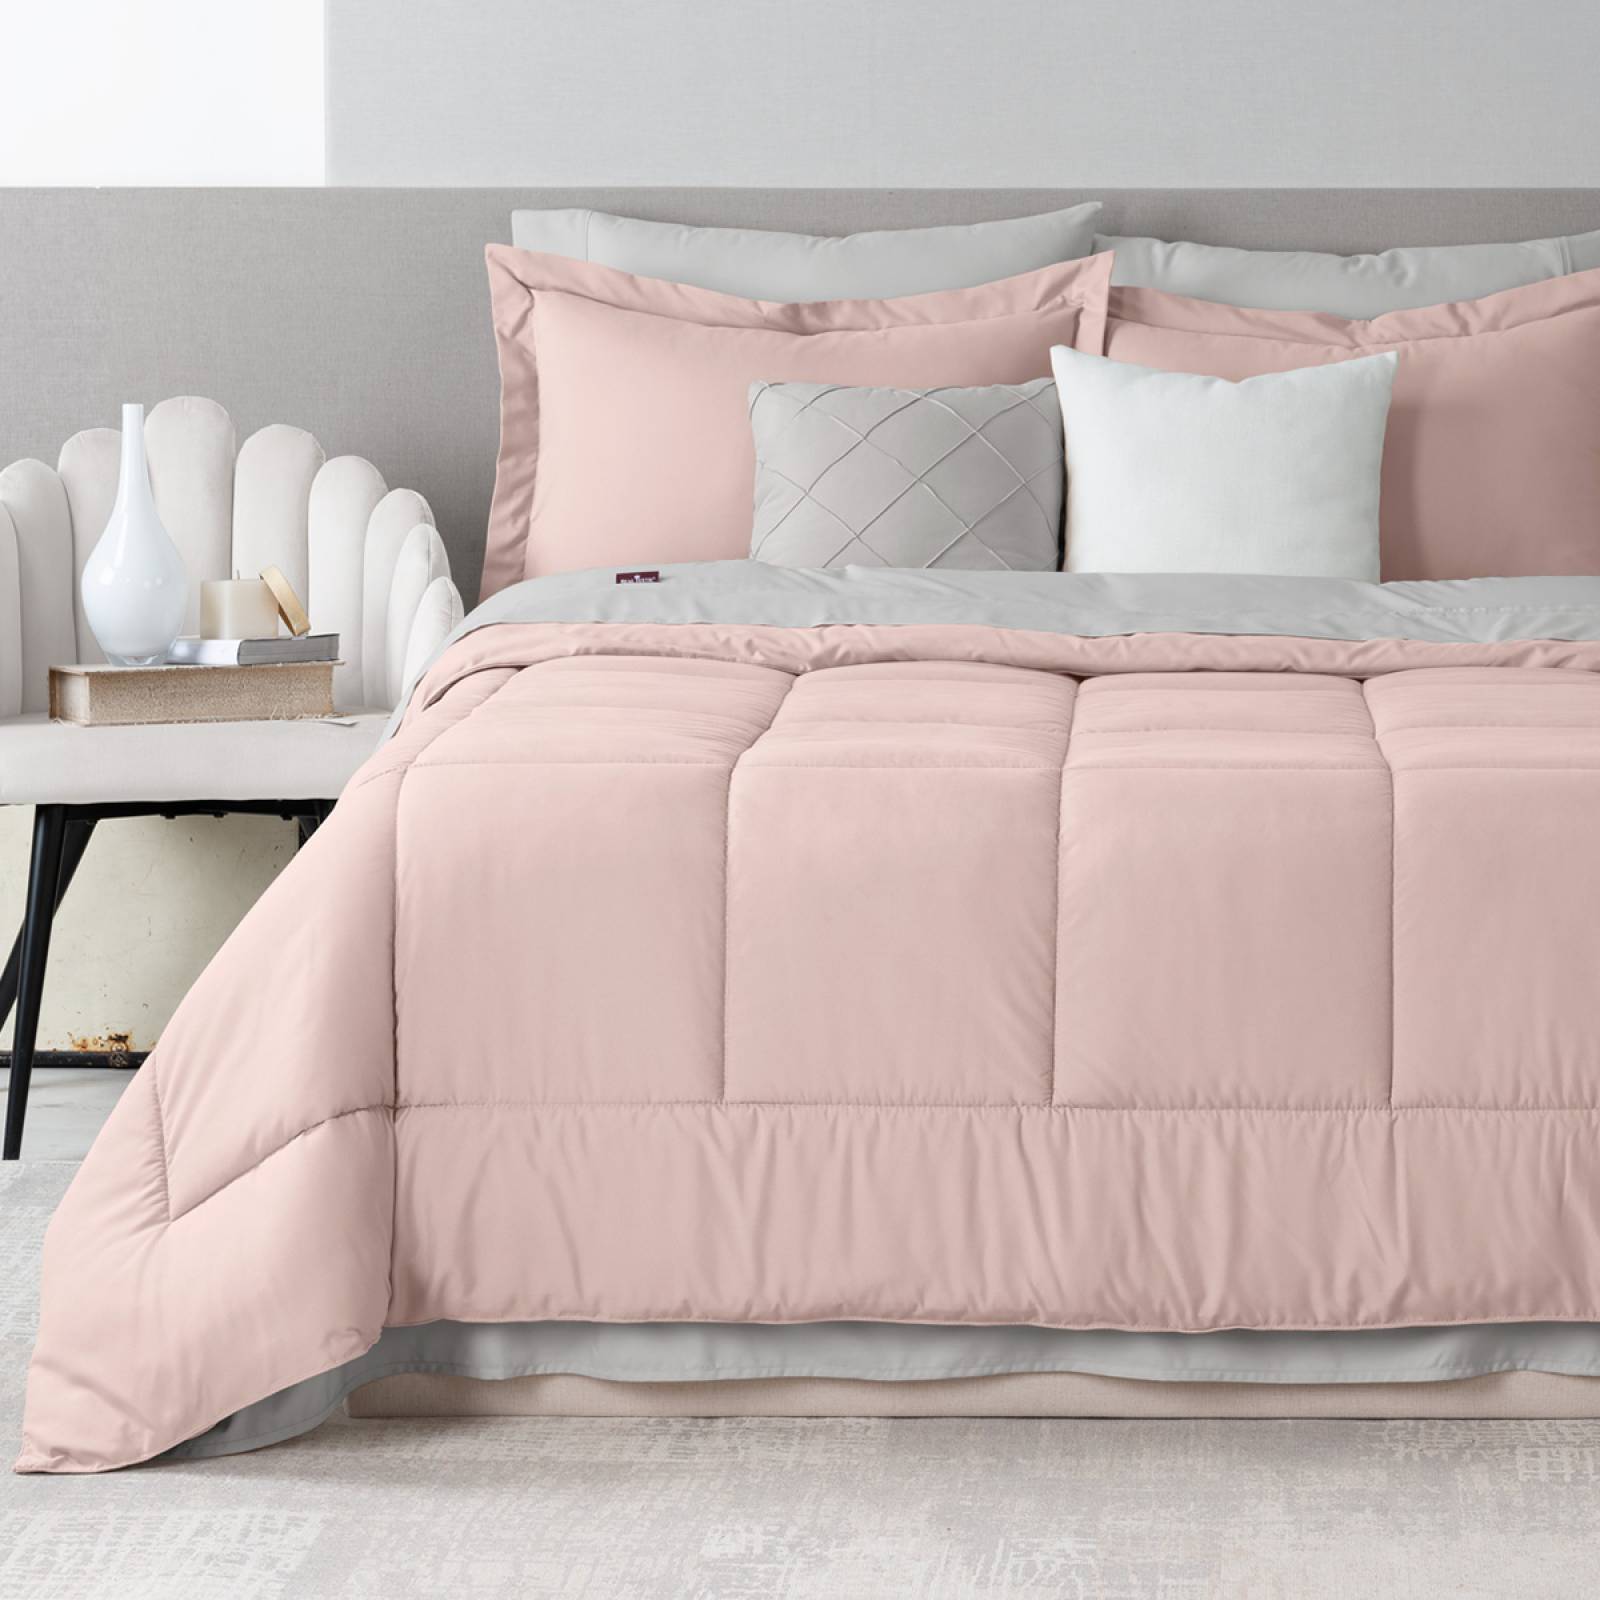 Funda de edredón de abeto rosa claro para cama de 160x200 cm.